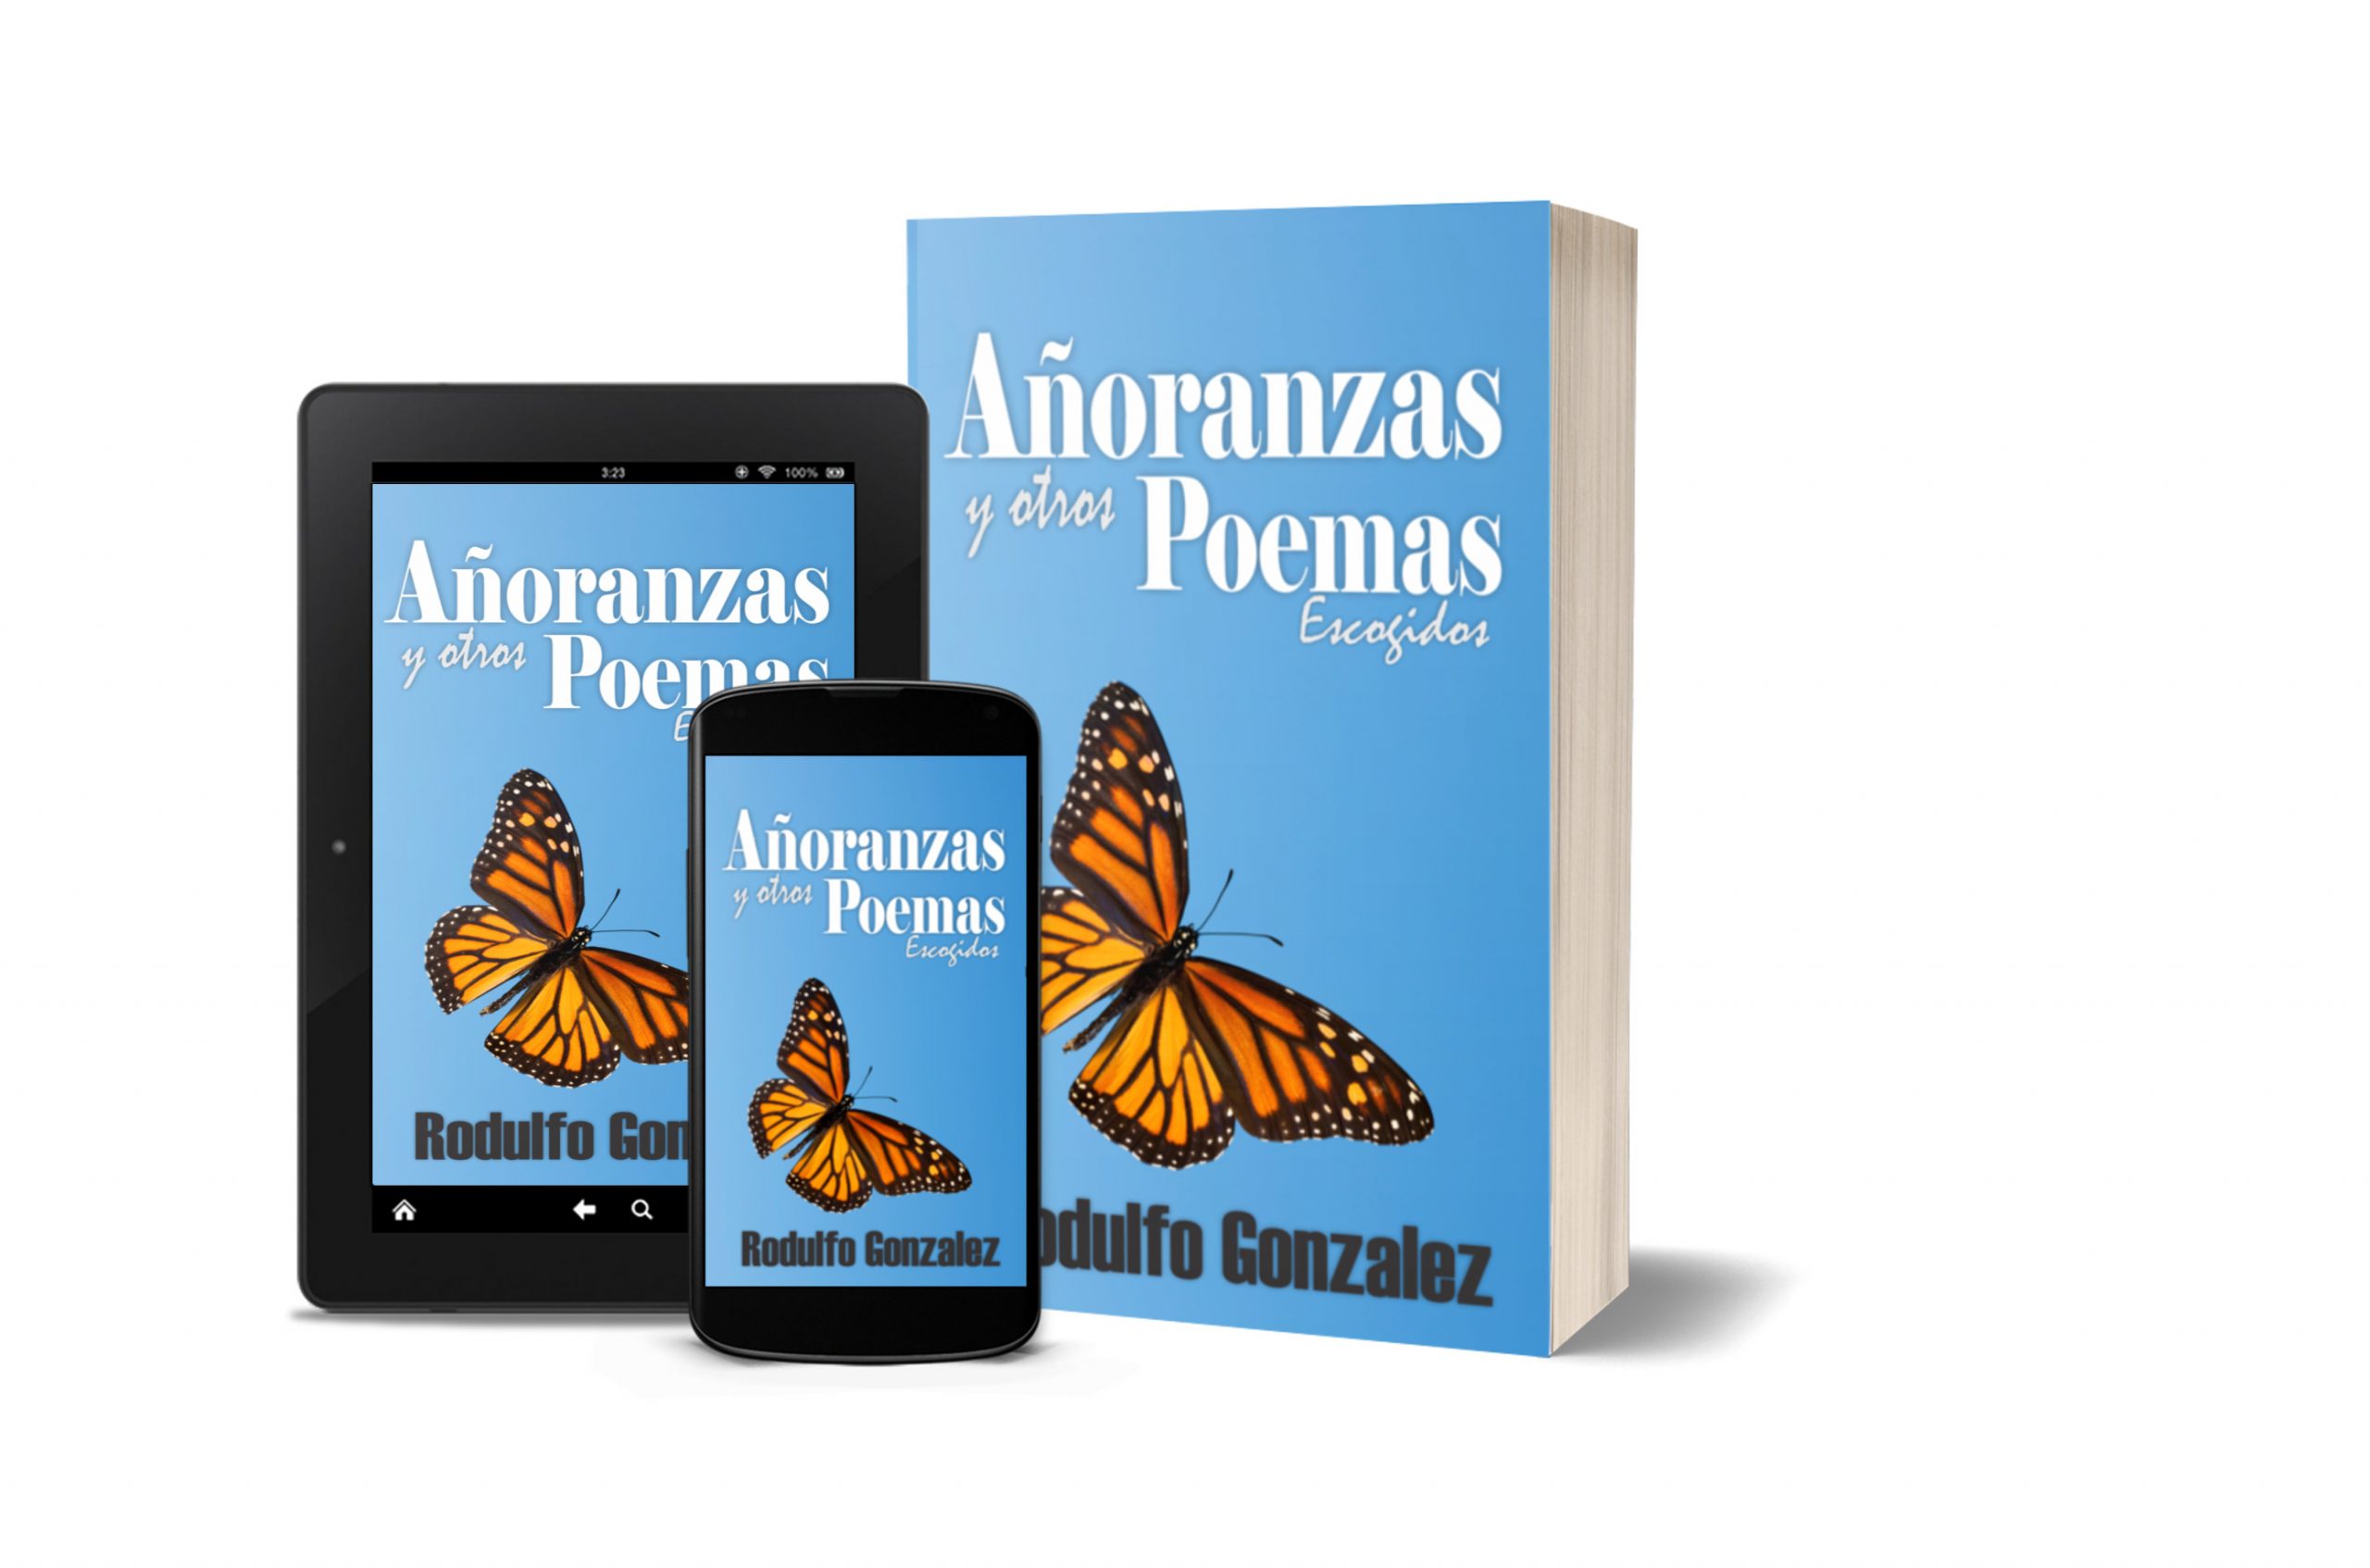 Añoranzas y otros Poemas de Rodulfo Gonzalez